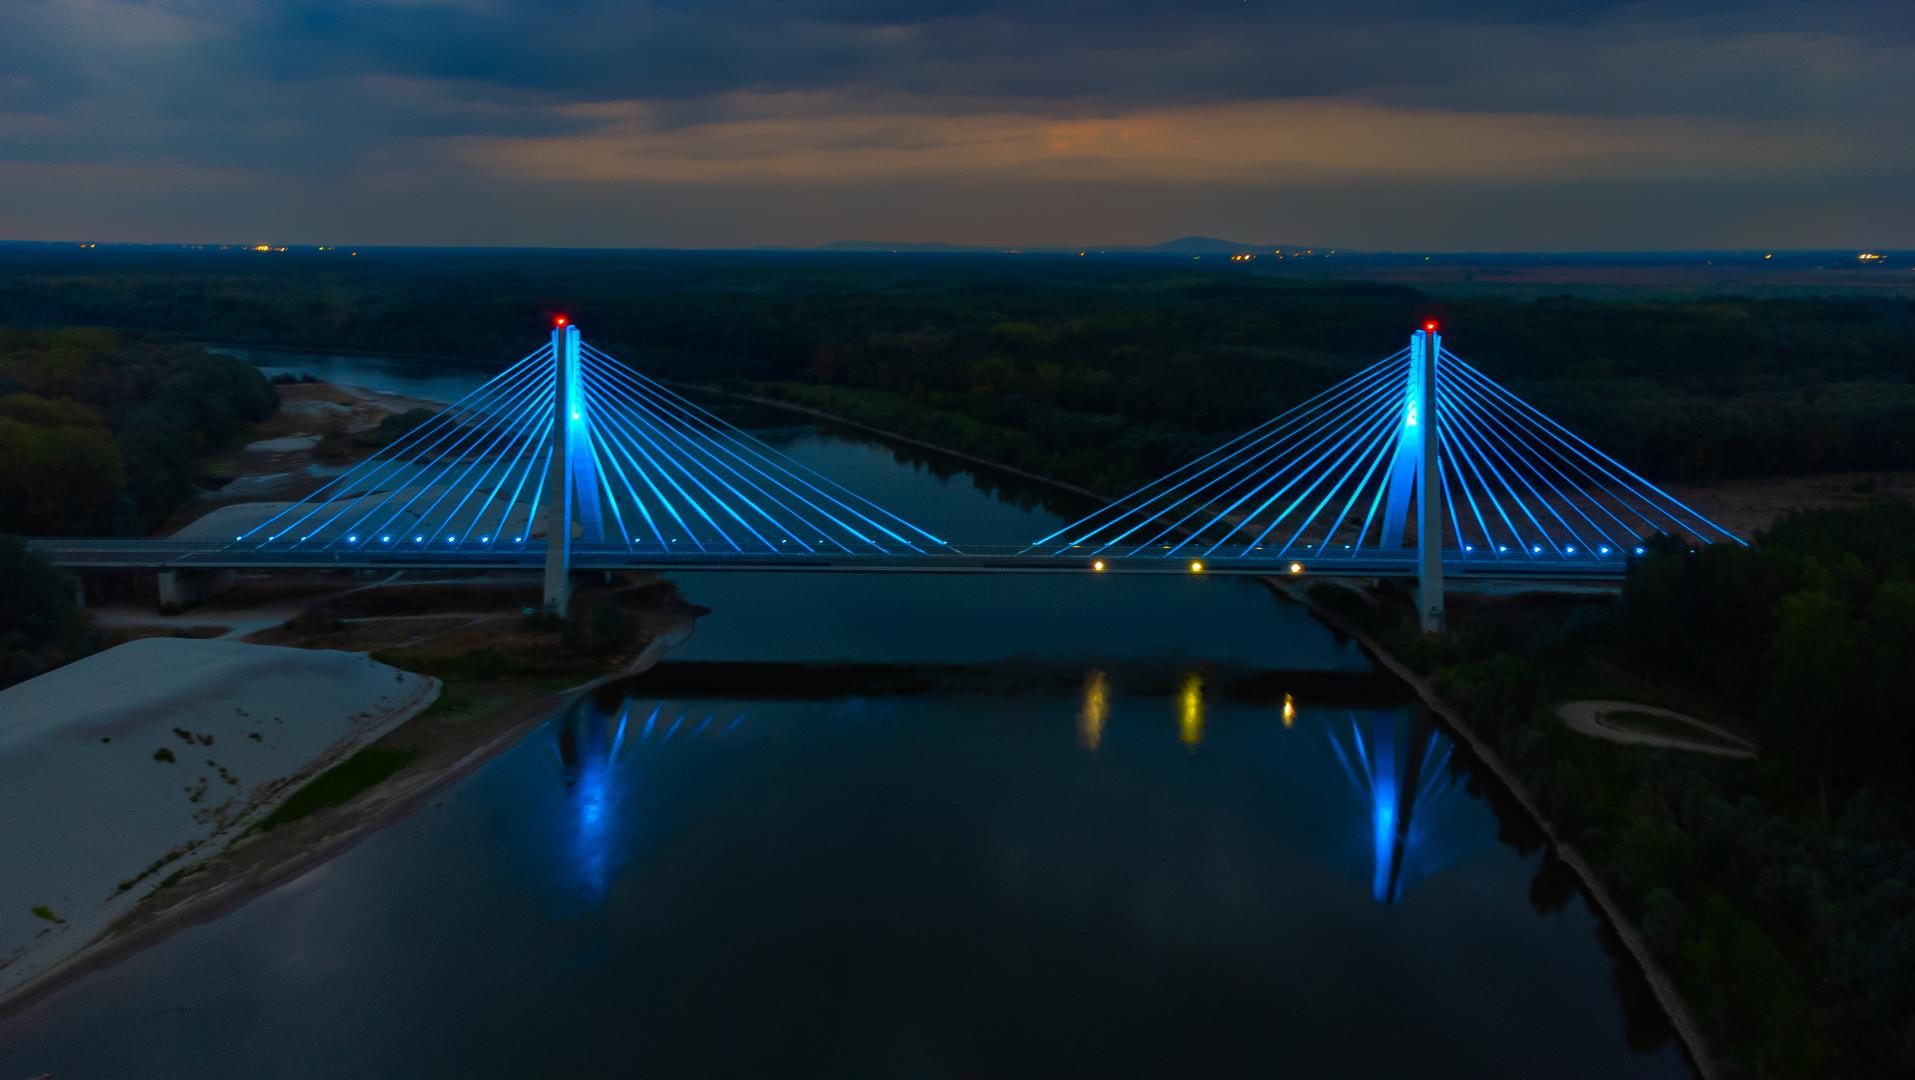 09.08.2022., Osijek, Petrijevci - Most preko rijeke Drave na koridoru 5c preko noci osvjetljen plavim svjetlom. Photo: Davor Javorovic/PIXSELL